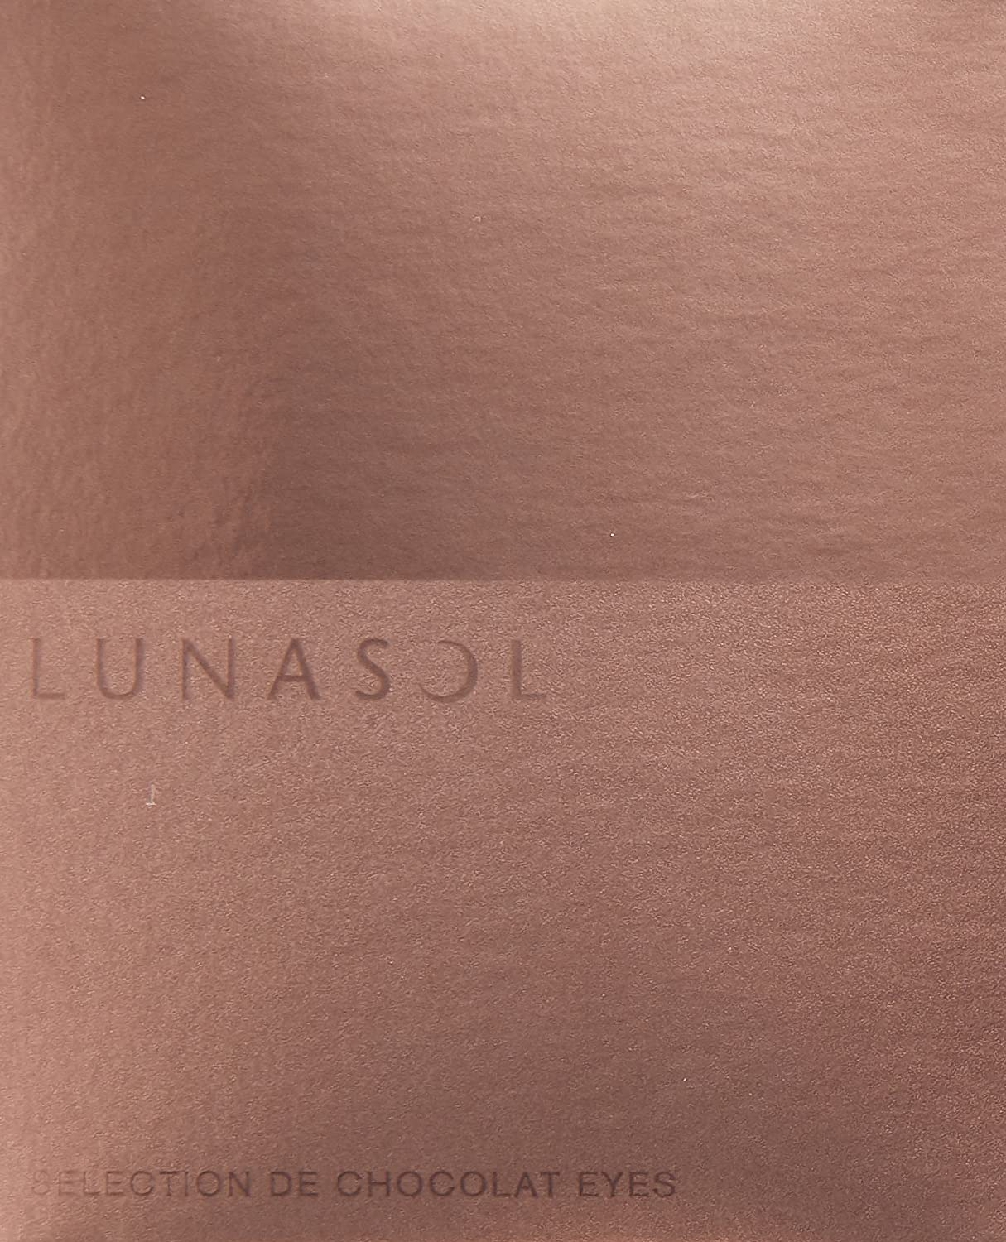 LUNASOL(ルナソル) セレクション・ドゥ・ショコラアイズの商品画像2 